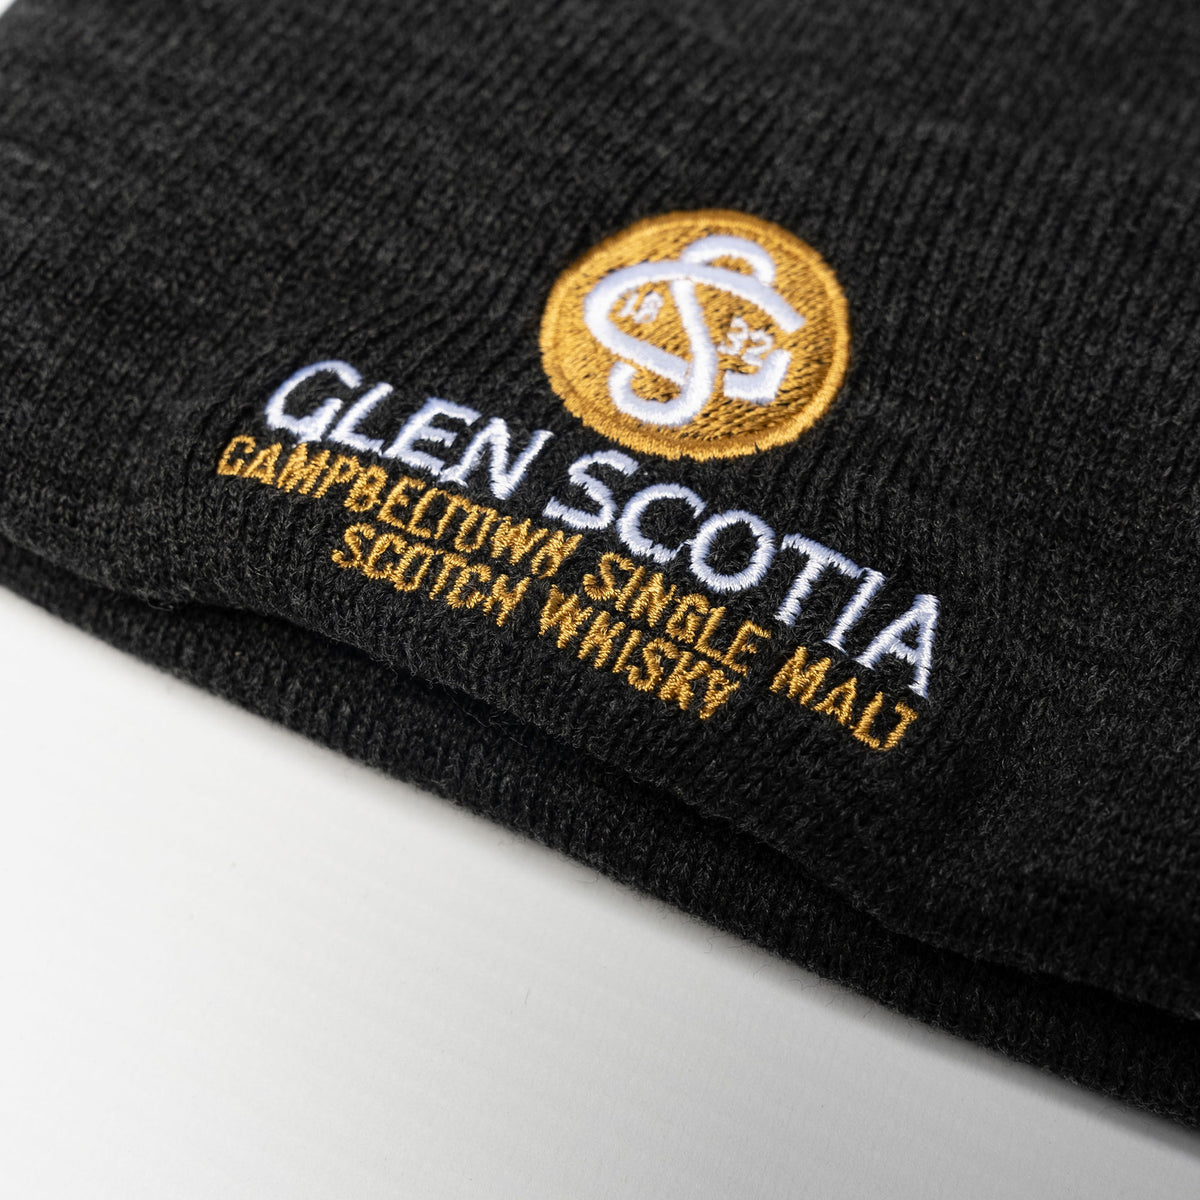 Glen Scotia Grey Beanie Hat